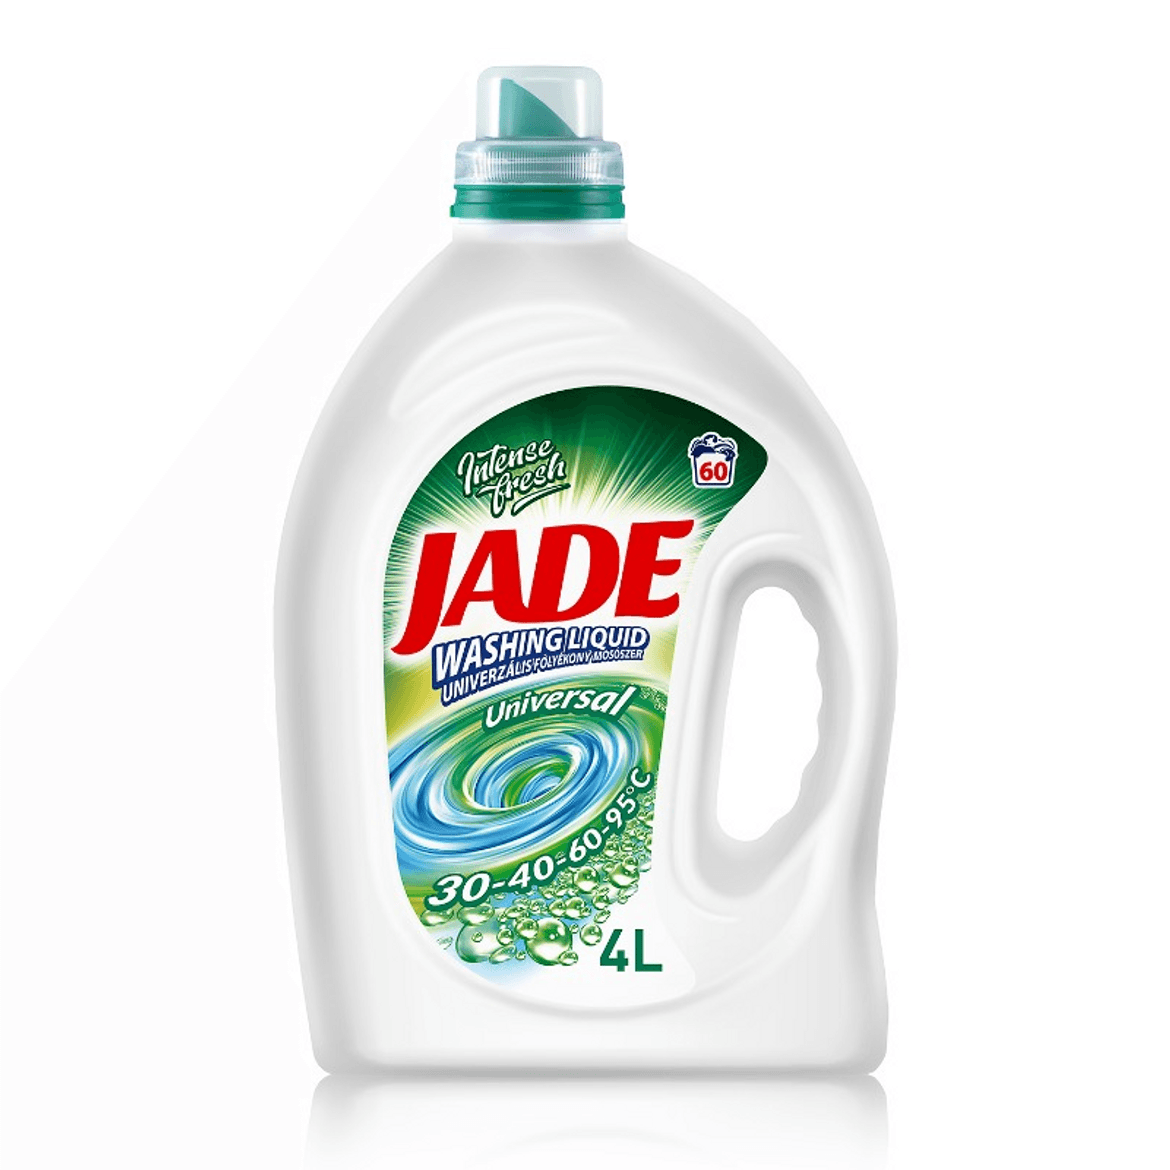 Jade folyékony mosószer 4L Universalásos